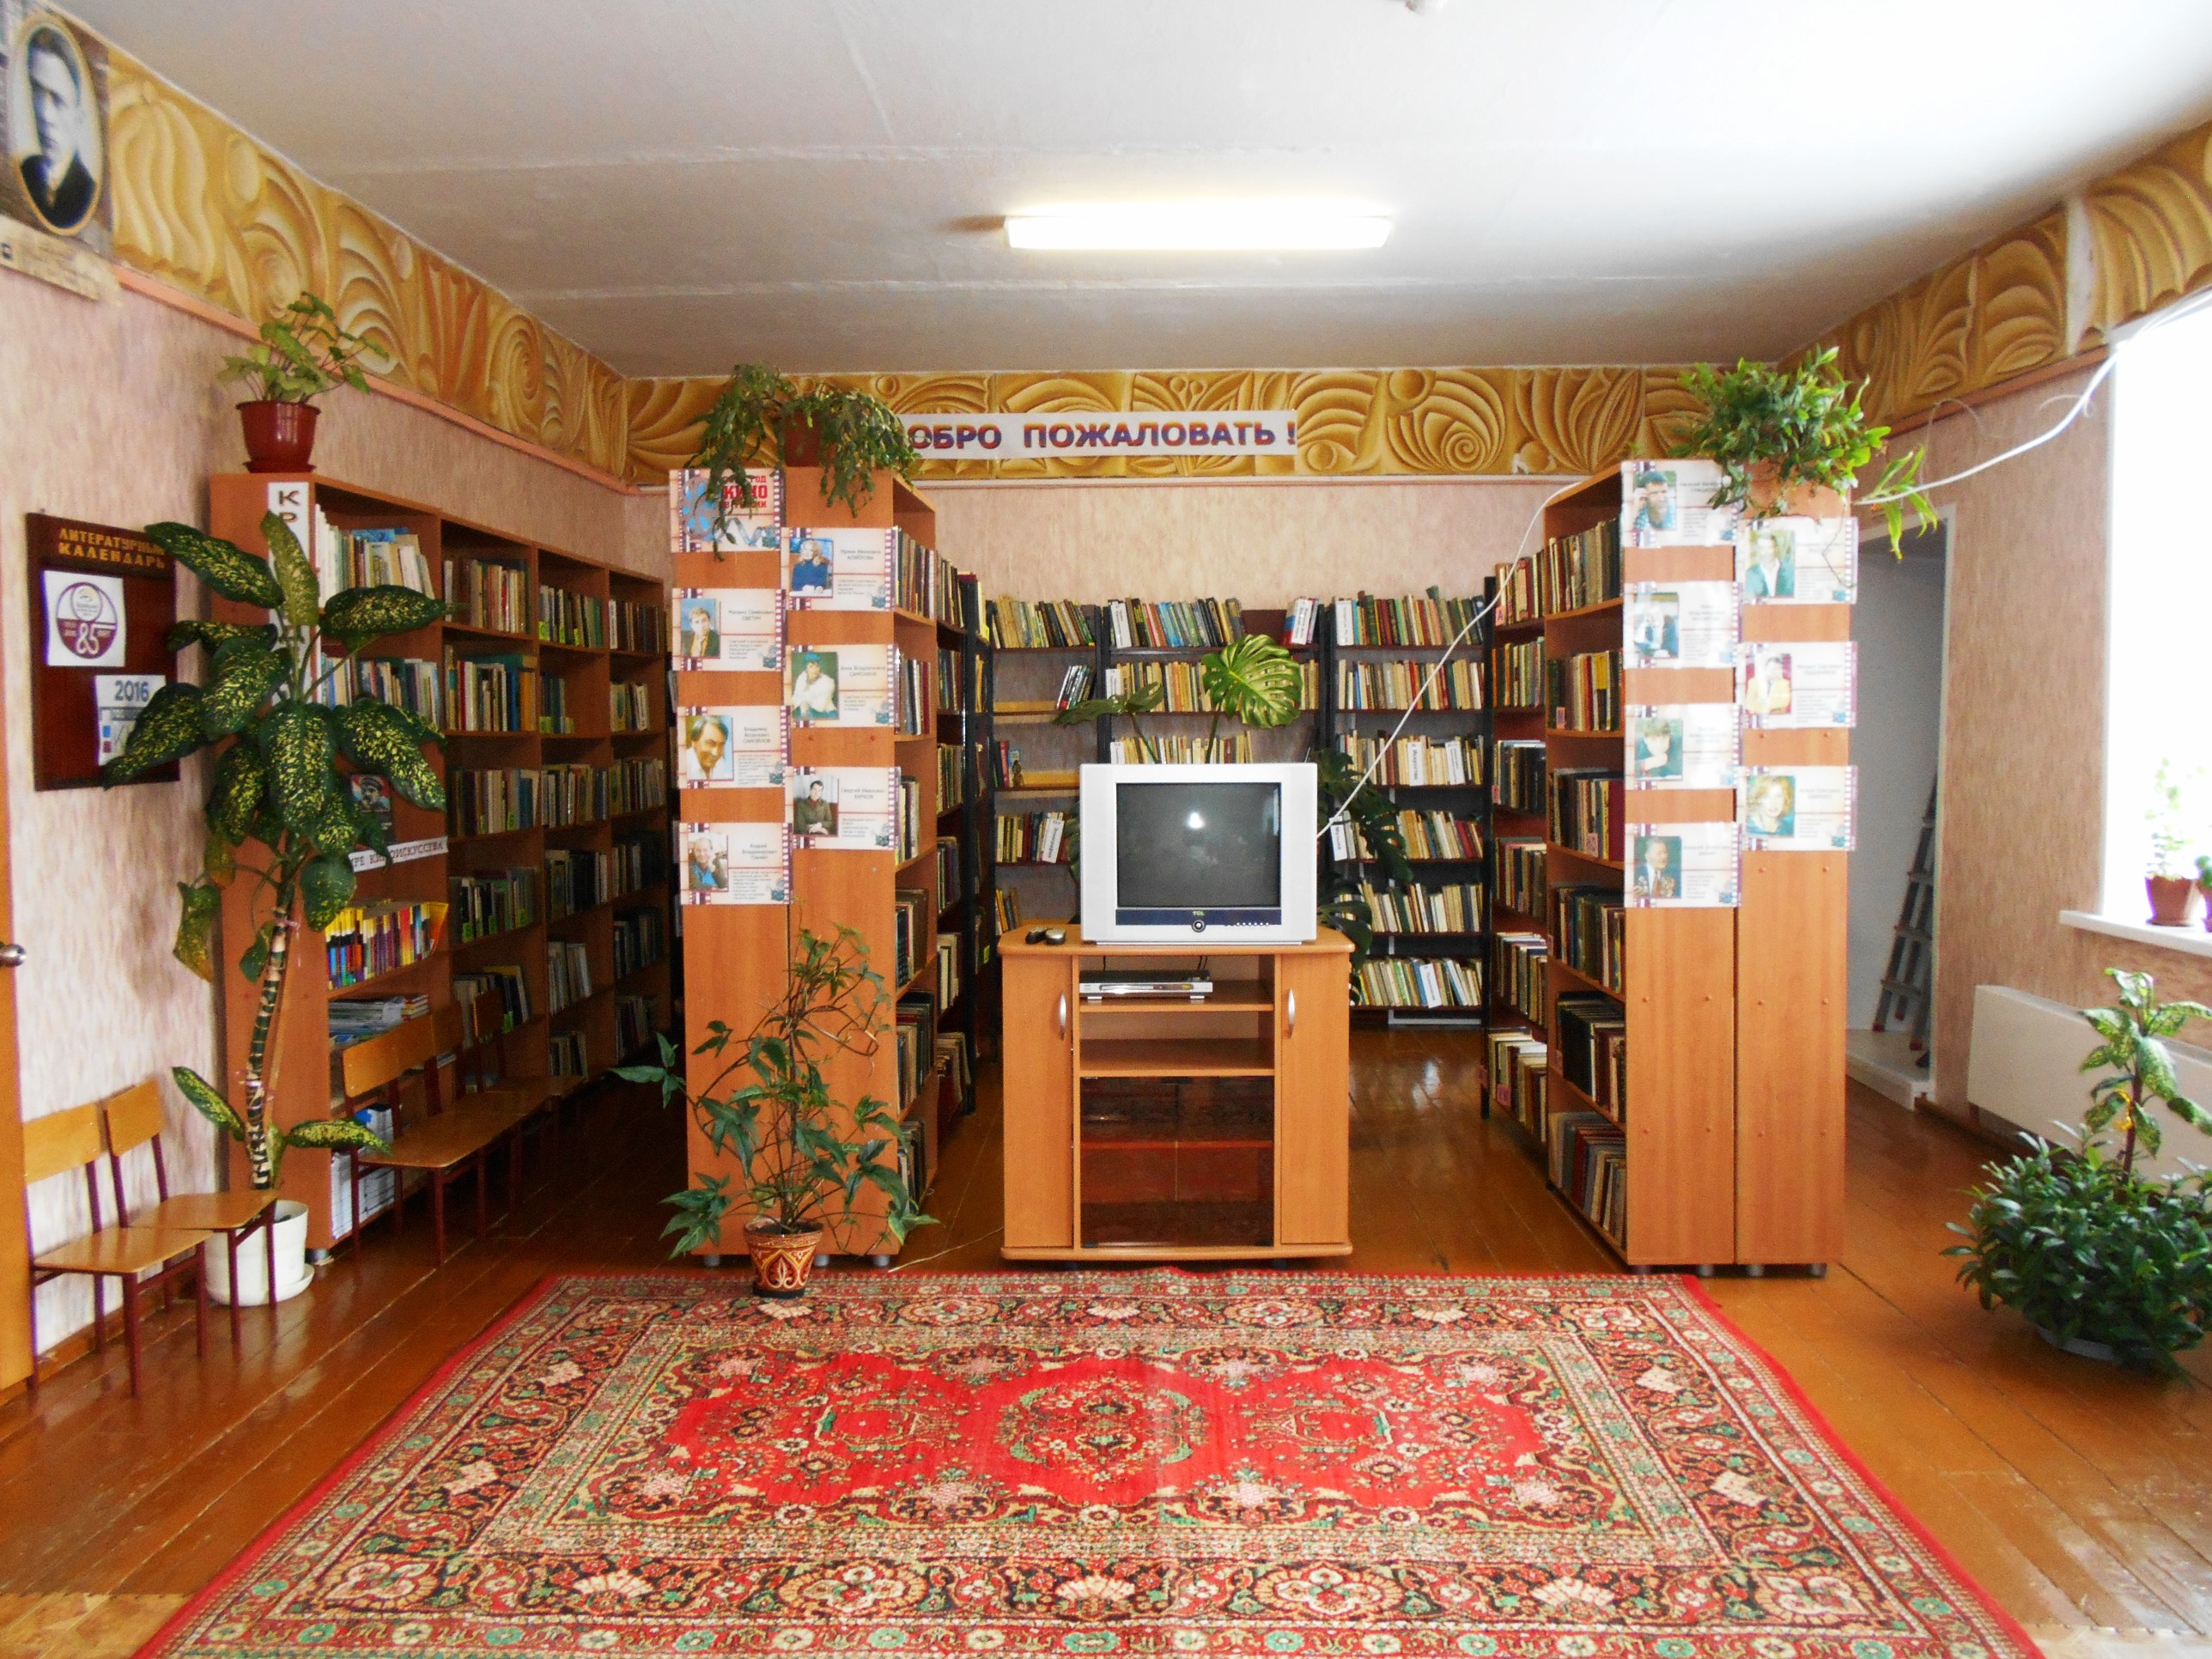 Новобачатская модельная сельская библиотека